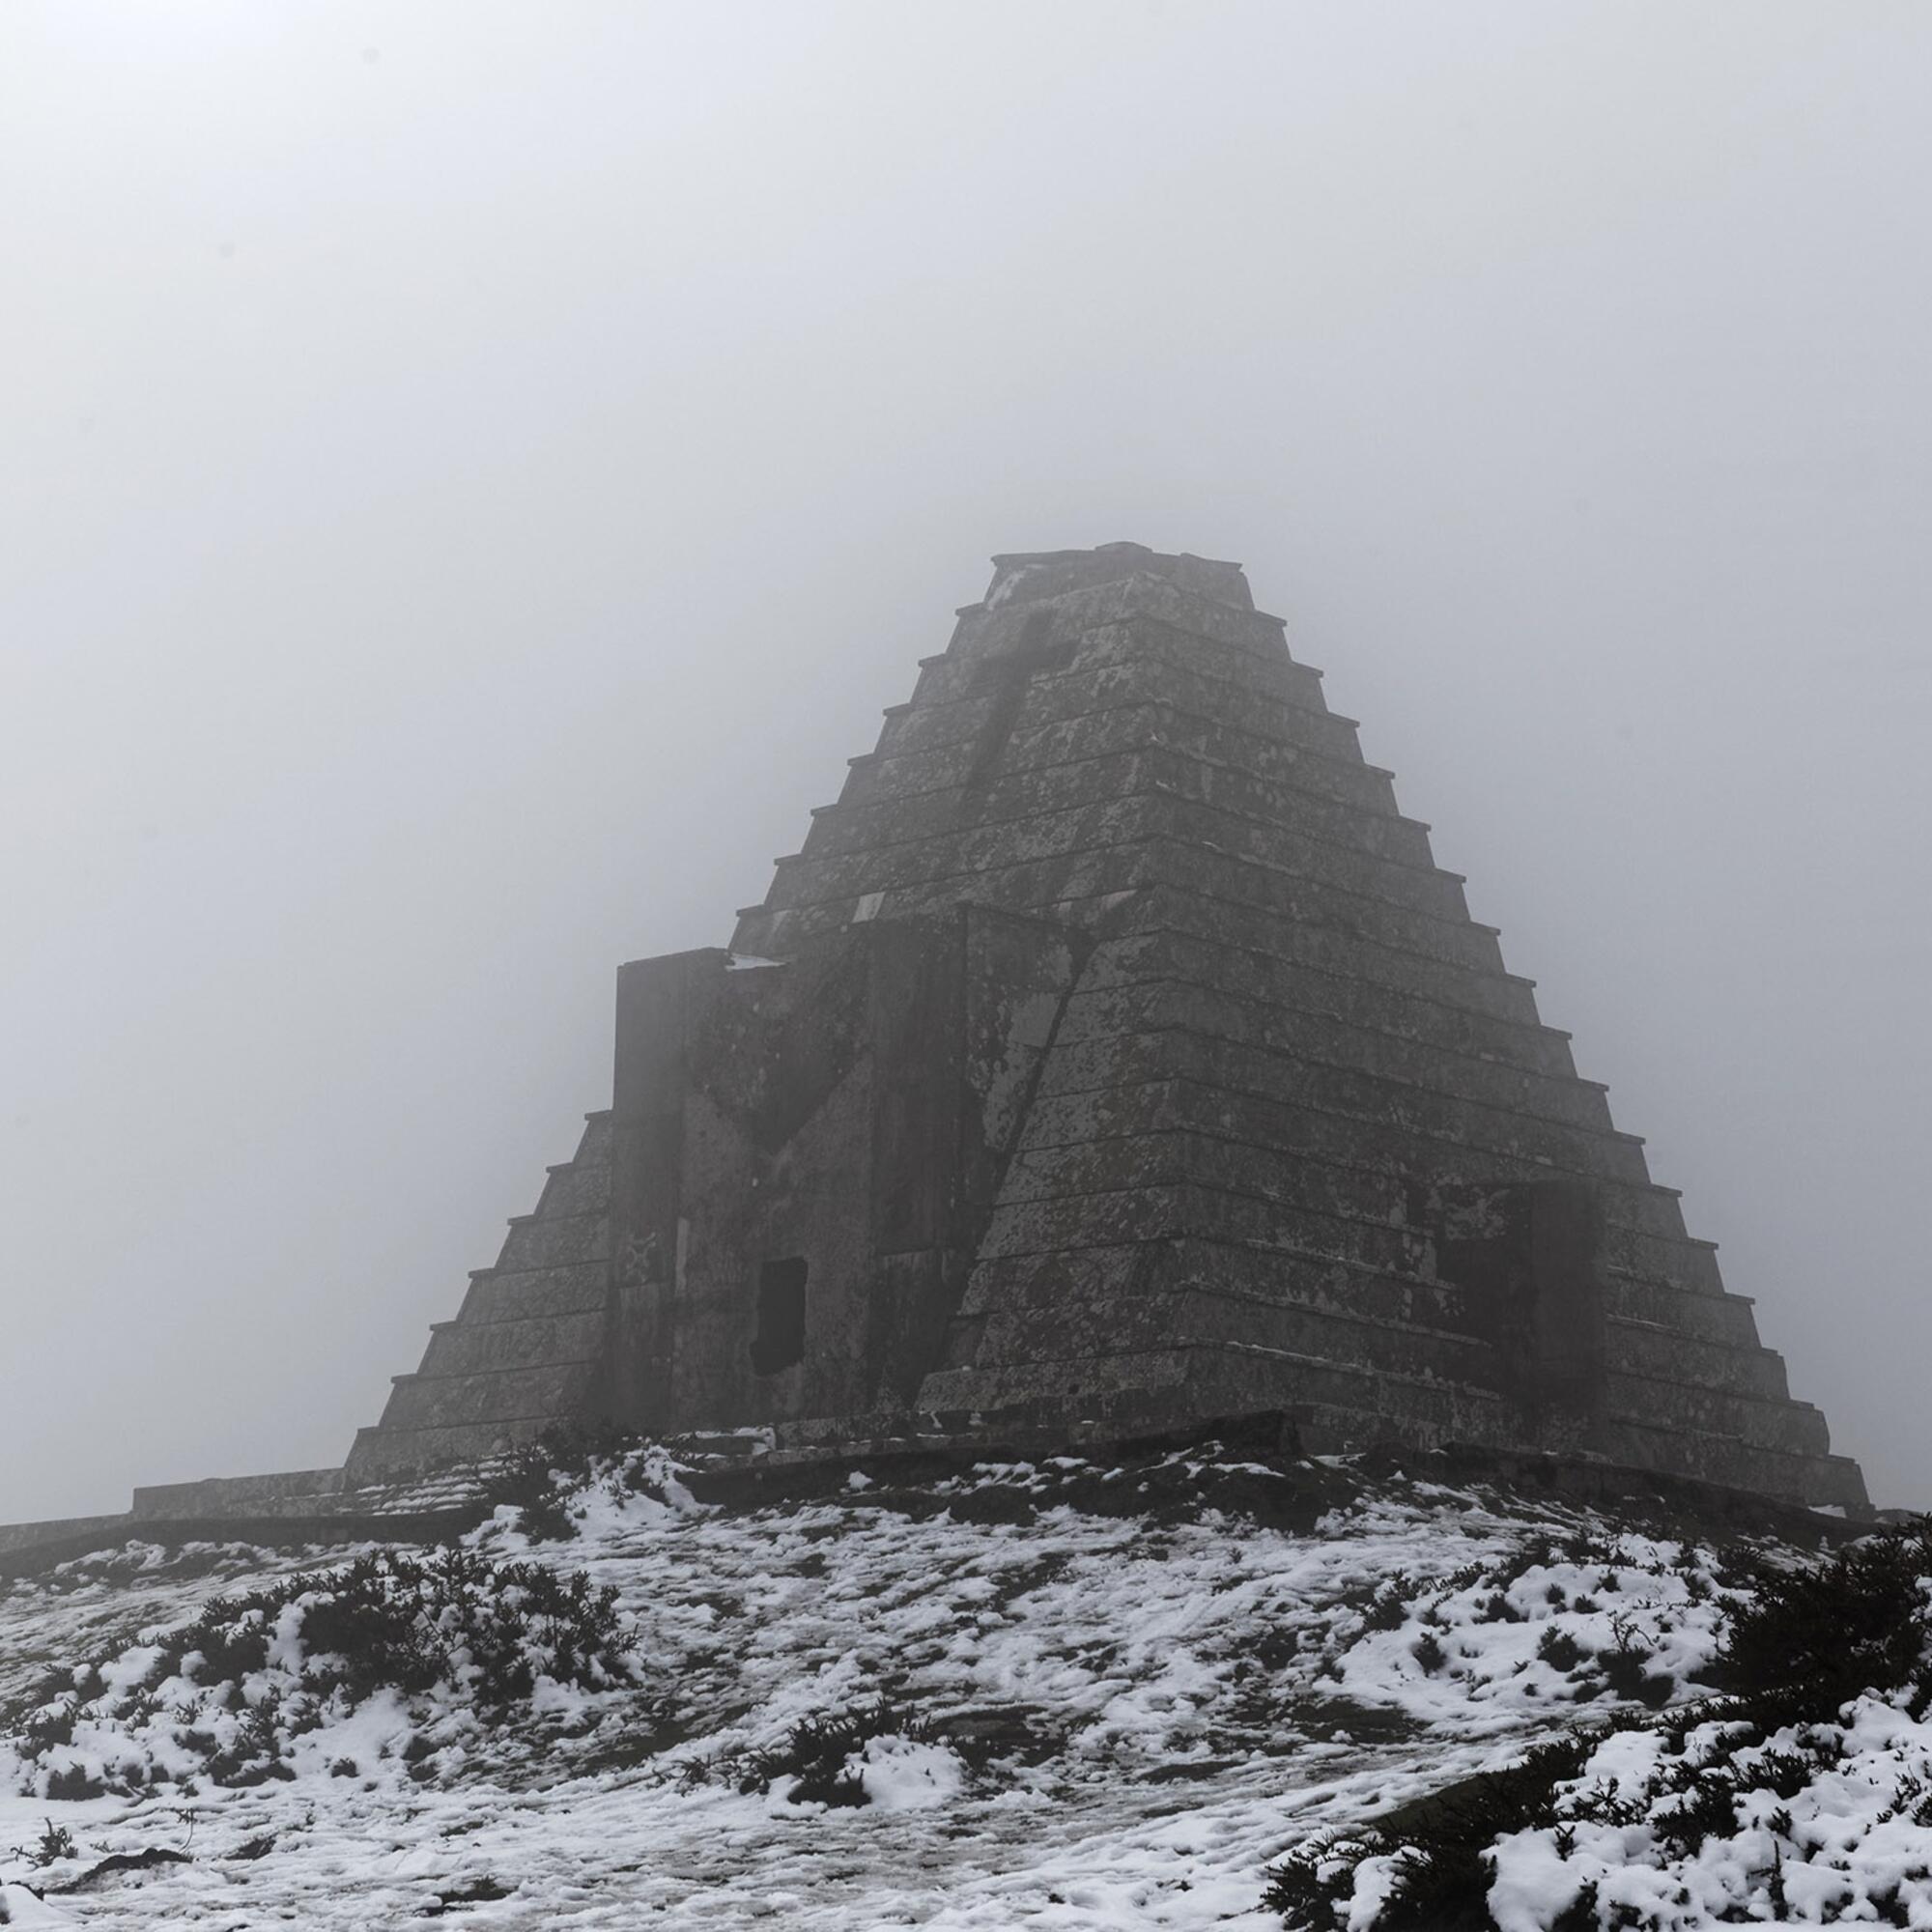 Pirámide de los italianos